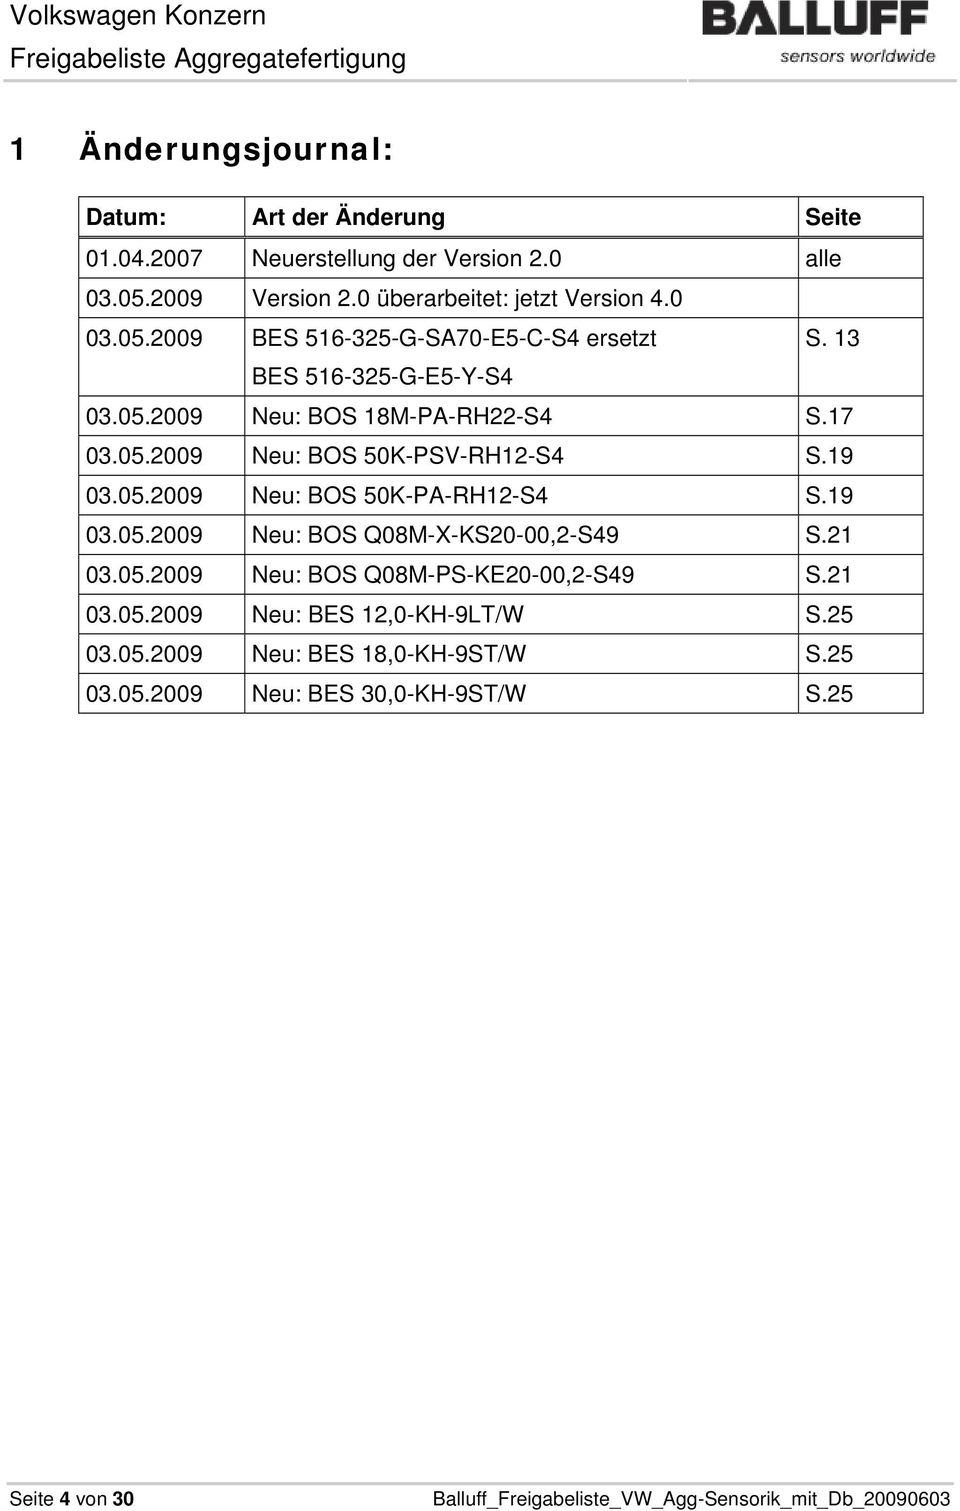 05.2009 Neu: BOS 50K-PA-RH12-S4 S.19 03.05.2009 Neu: BOS Q08M-X-KS20-00,2-S49 S.21 03.05.2009 Neu: BOS Q08M-PS-KE20-00,2-S49 S.21 03.05.2009 Neu: BES 12,0-KH-9LT/W S.